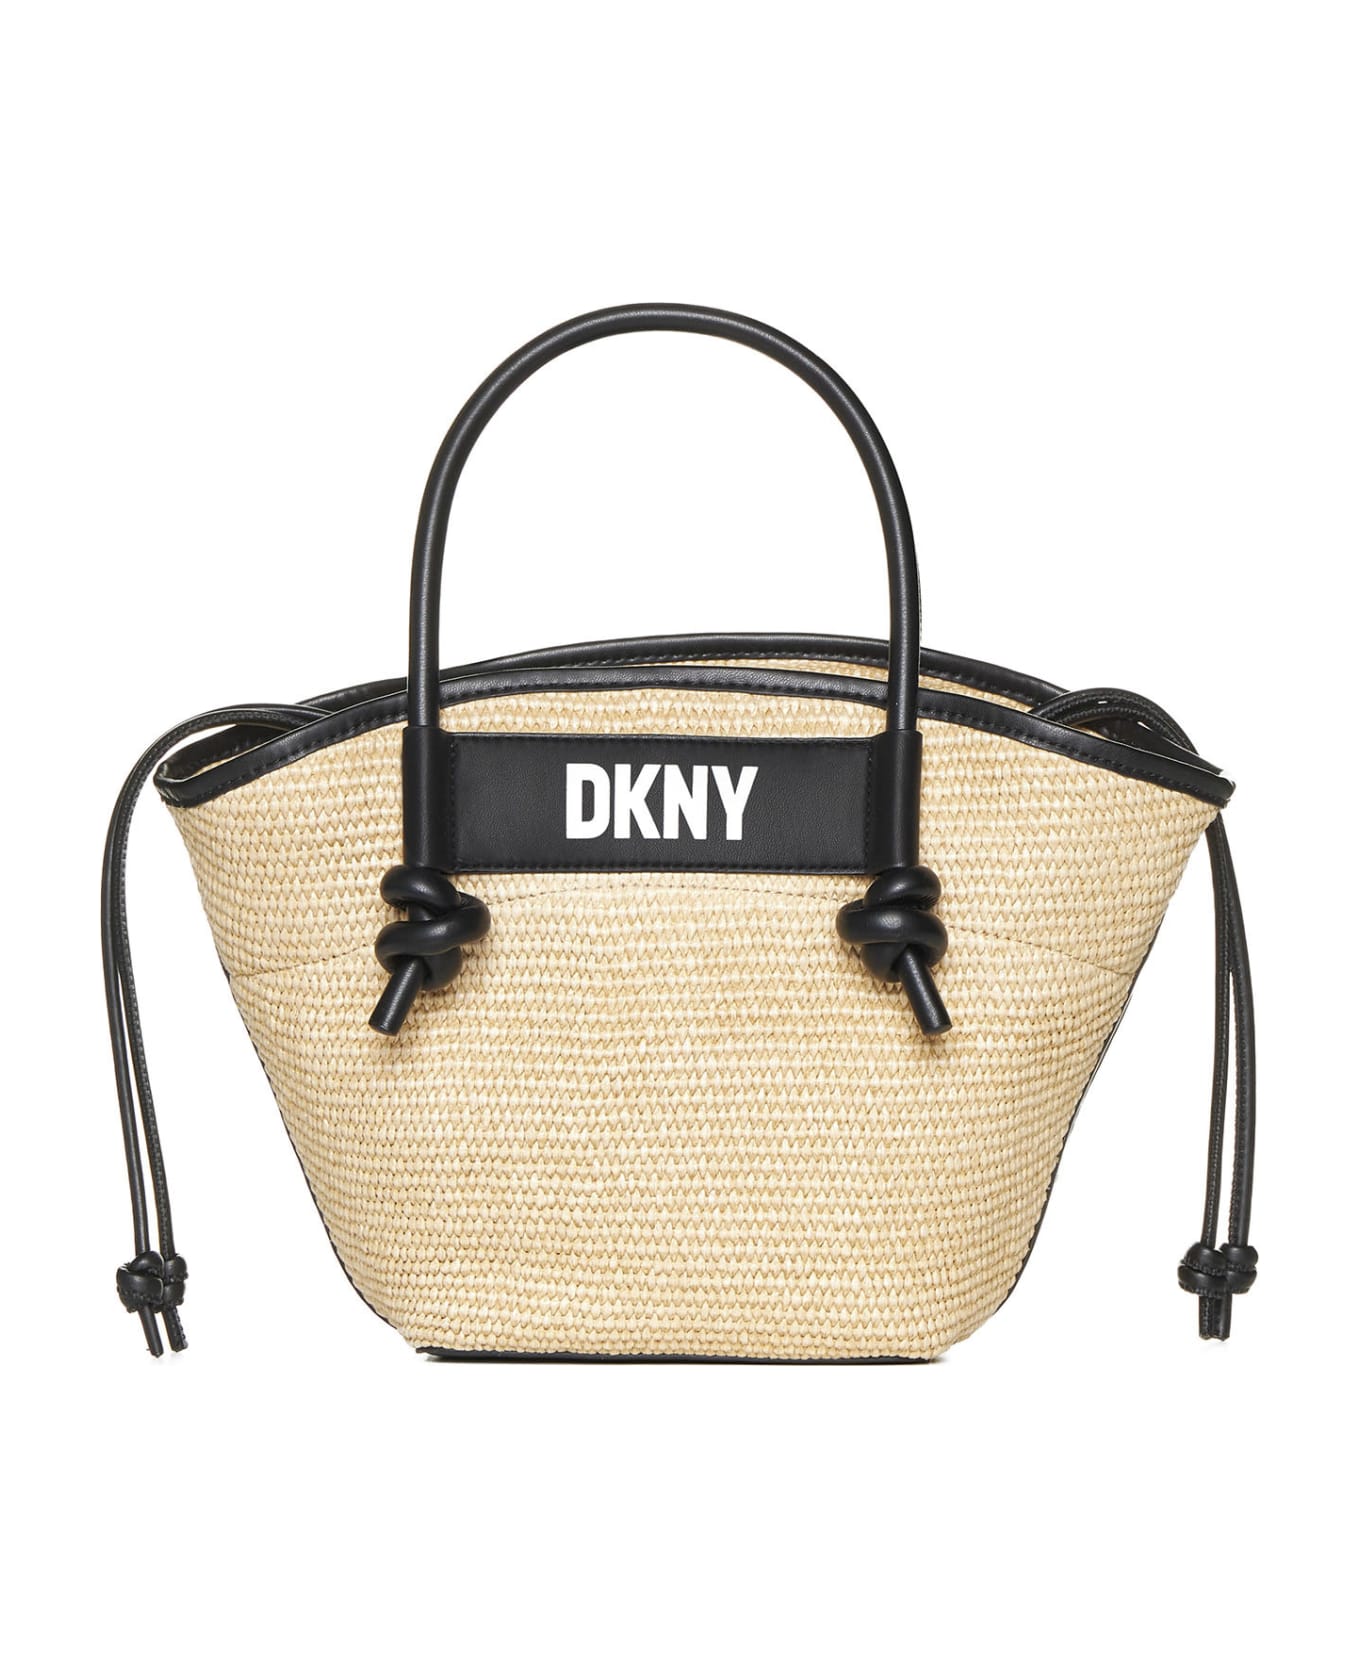 DKNY Shoulder Bag - Natural/black